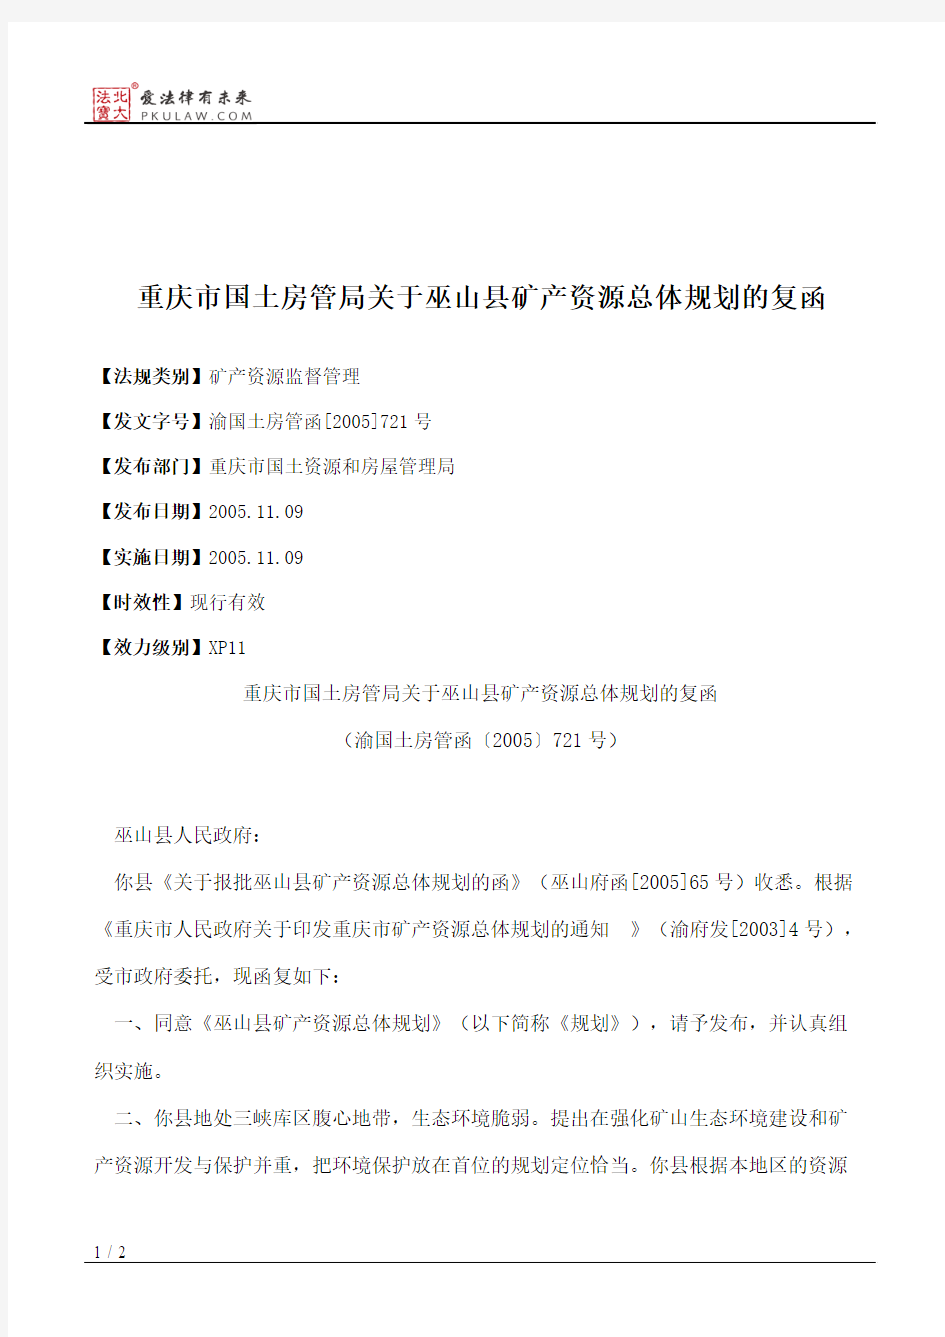 重庆市国土房管局关于巫山县矿产资源总体规划的复函